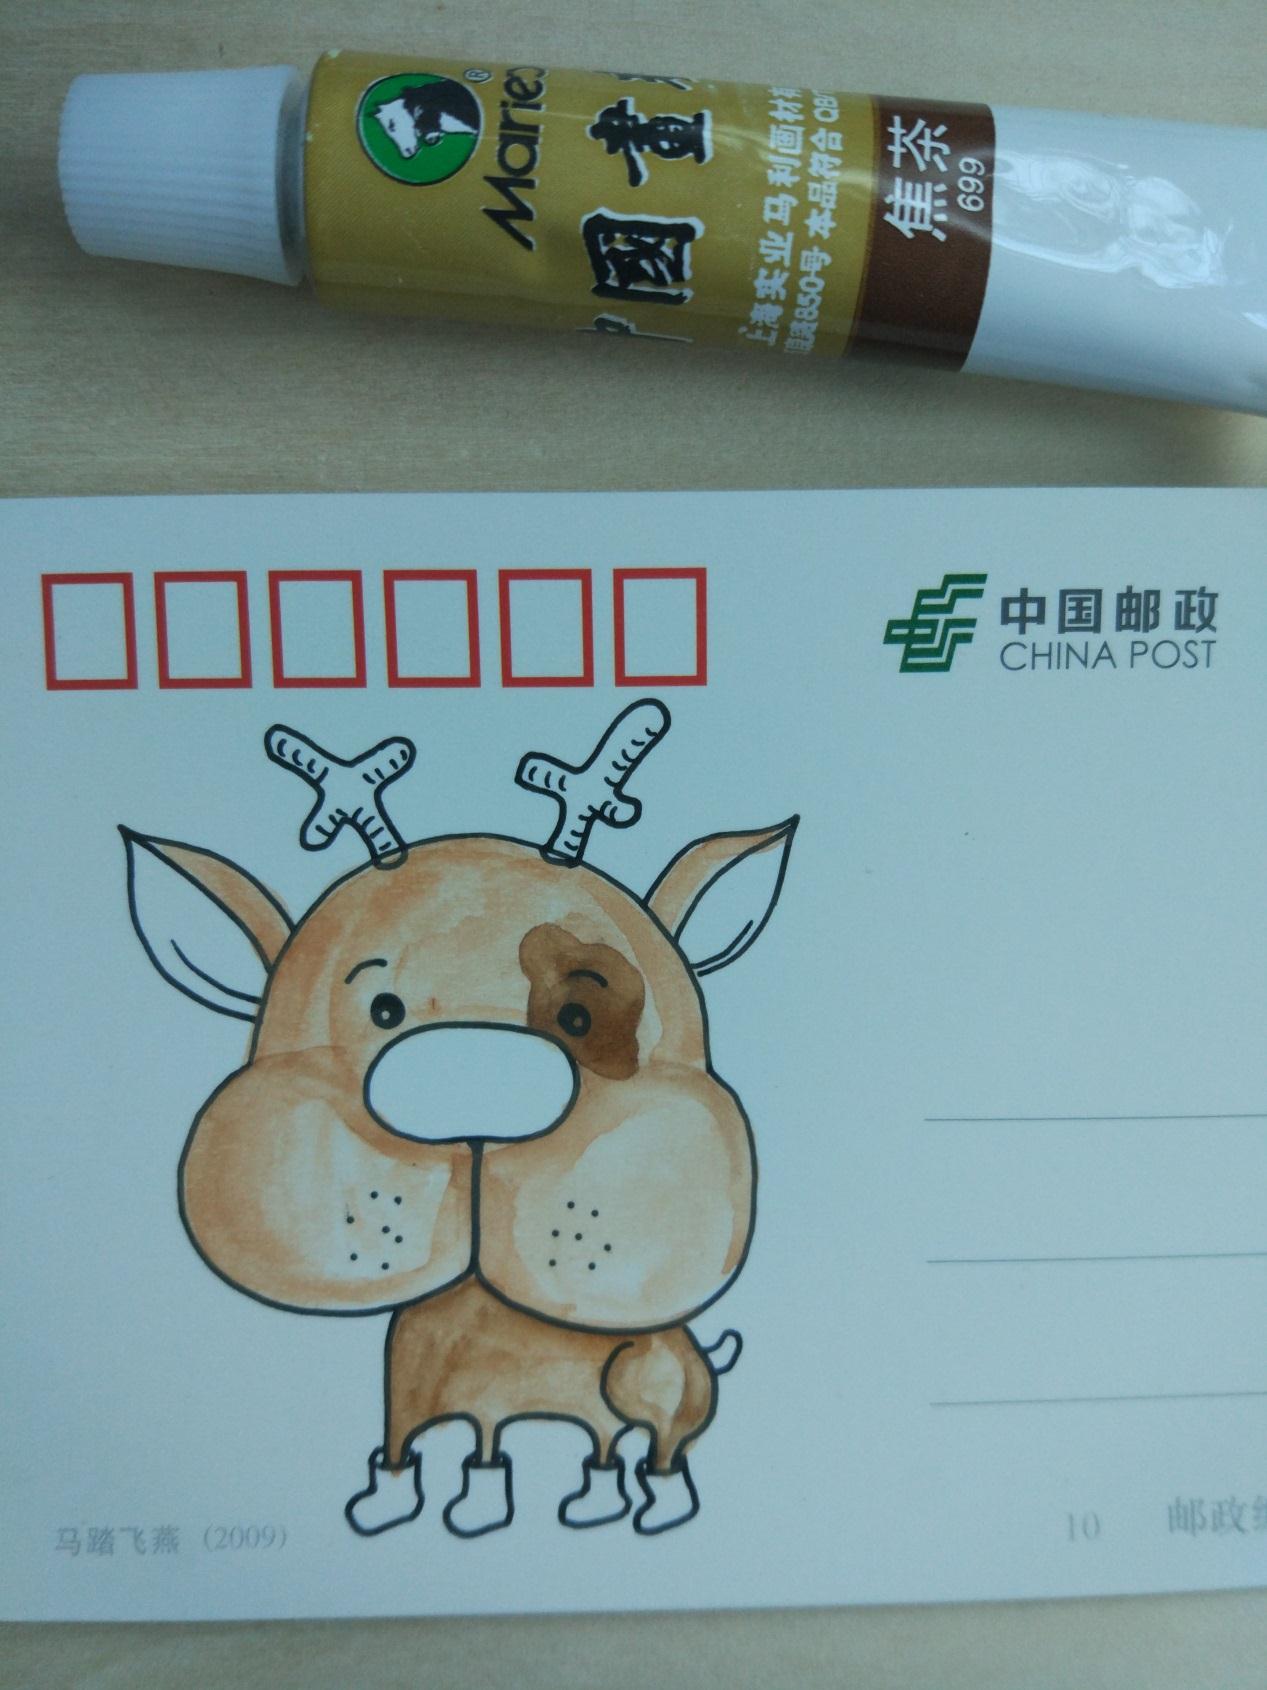 用铅笔起稿的原创DIY手绘作品 可爱的小鹿制作教程